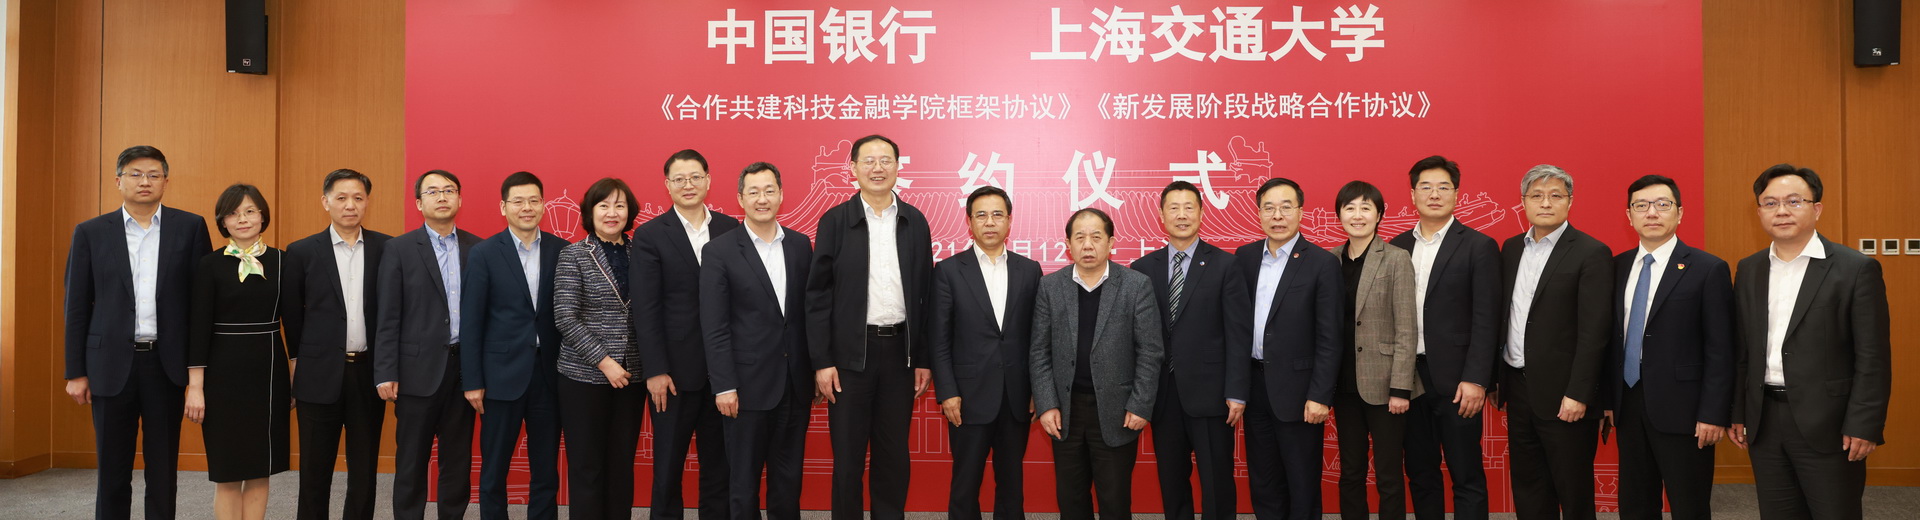 上海交通大学与中国银行签署新发展阶段战略合作协议